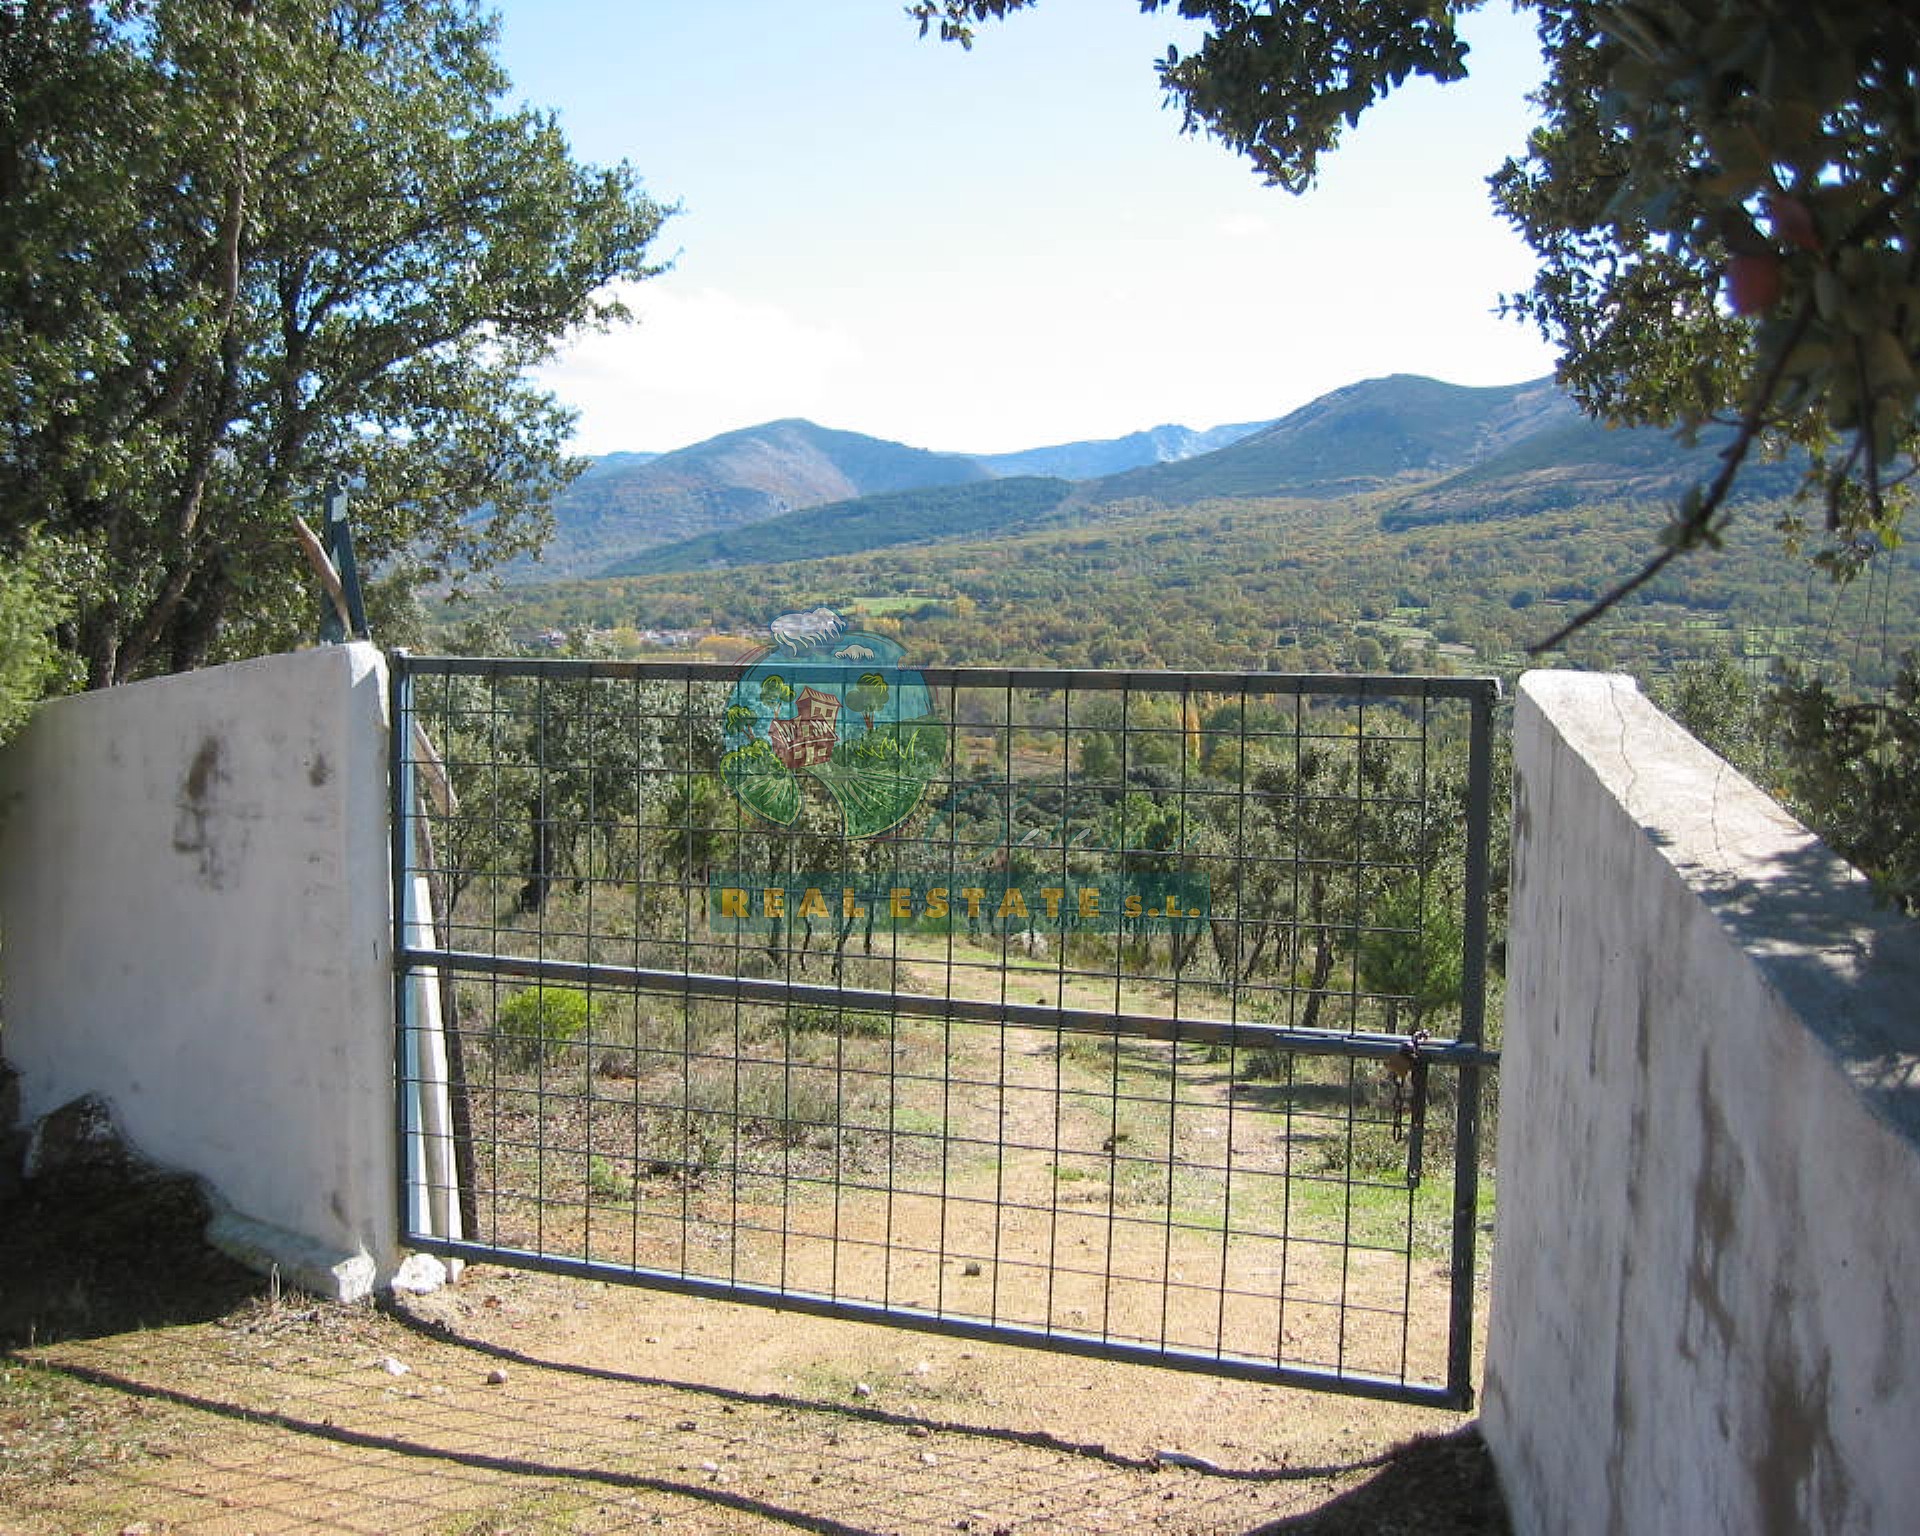 Rural for social/public projects in Sierra de Gredos.